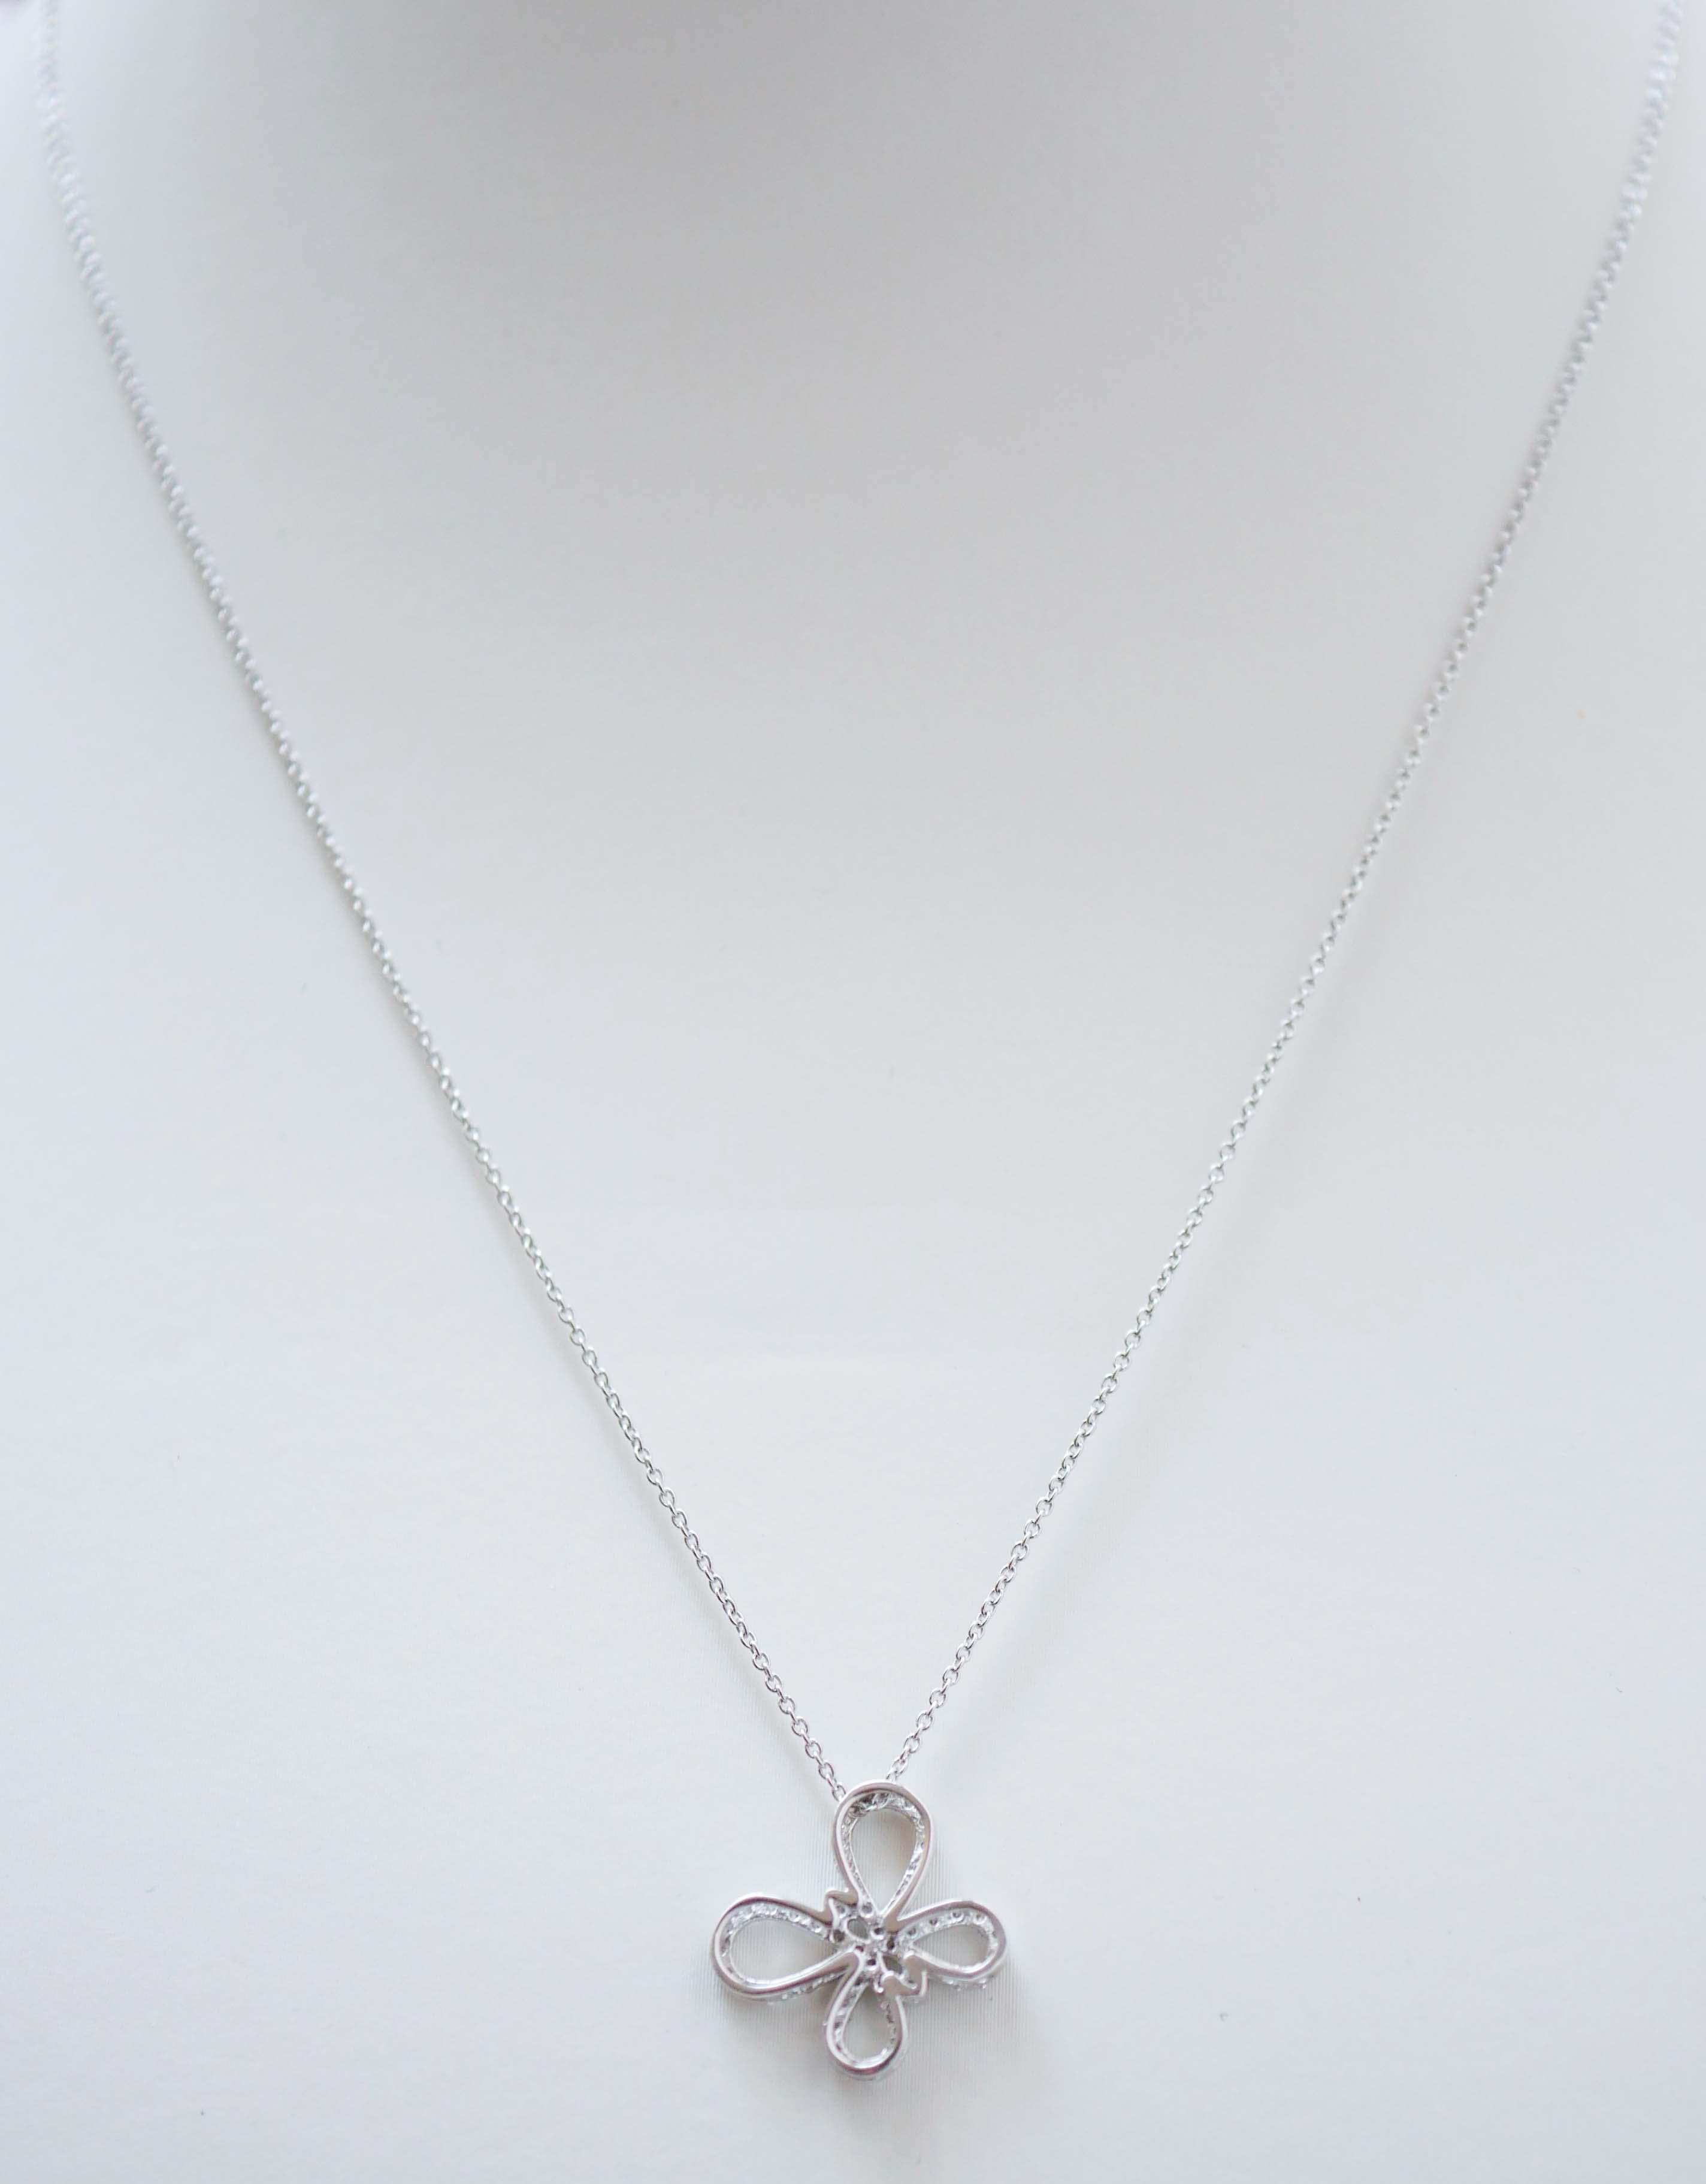 Brilliant Cut Diamonds, 18 Karat White Gold Pendant Necklace. For Sale